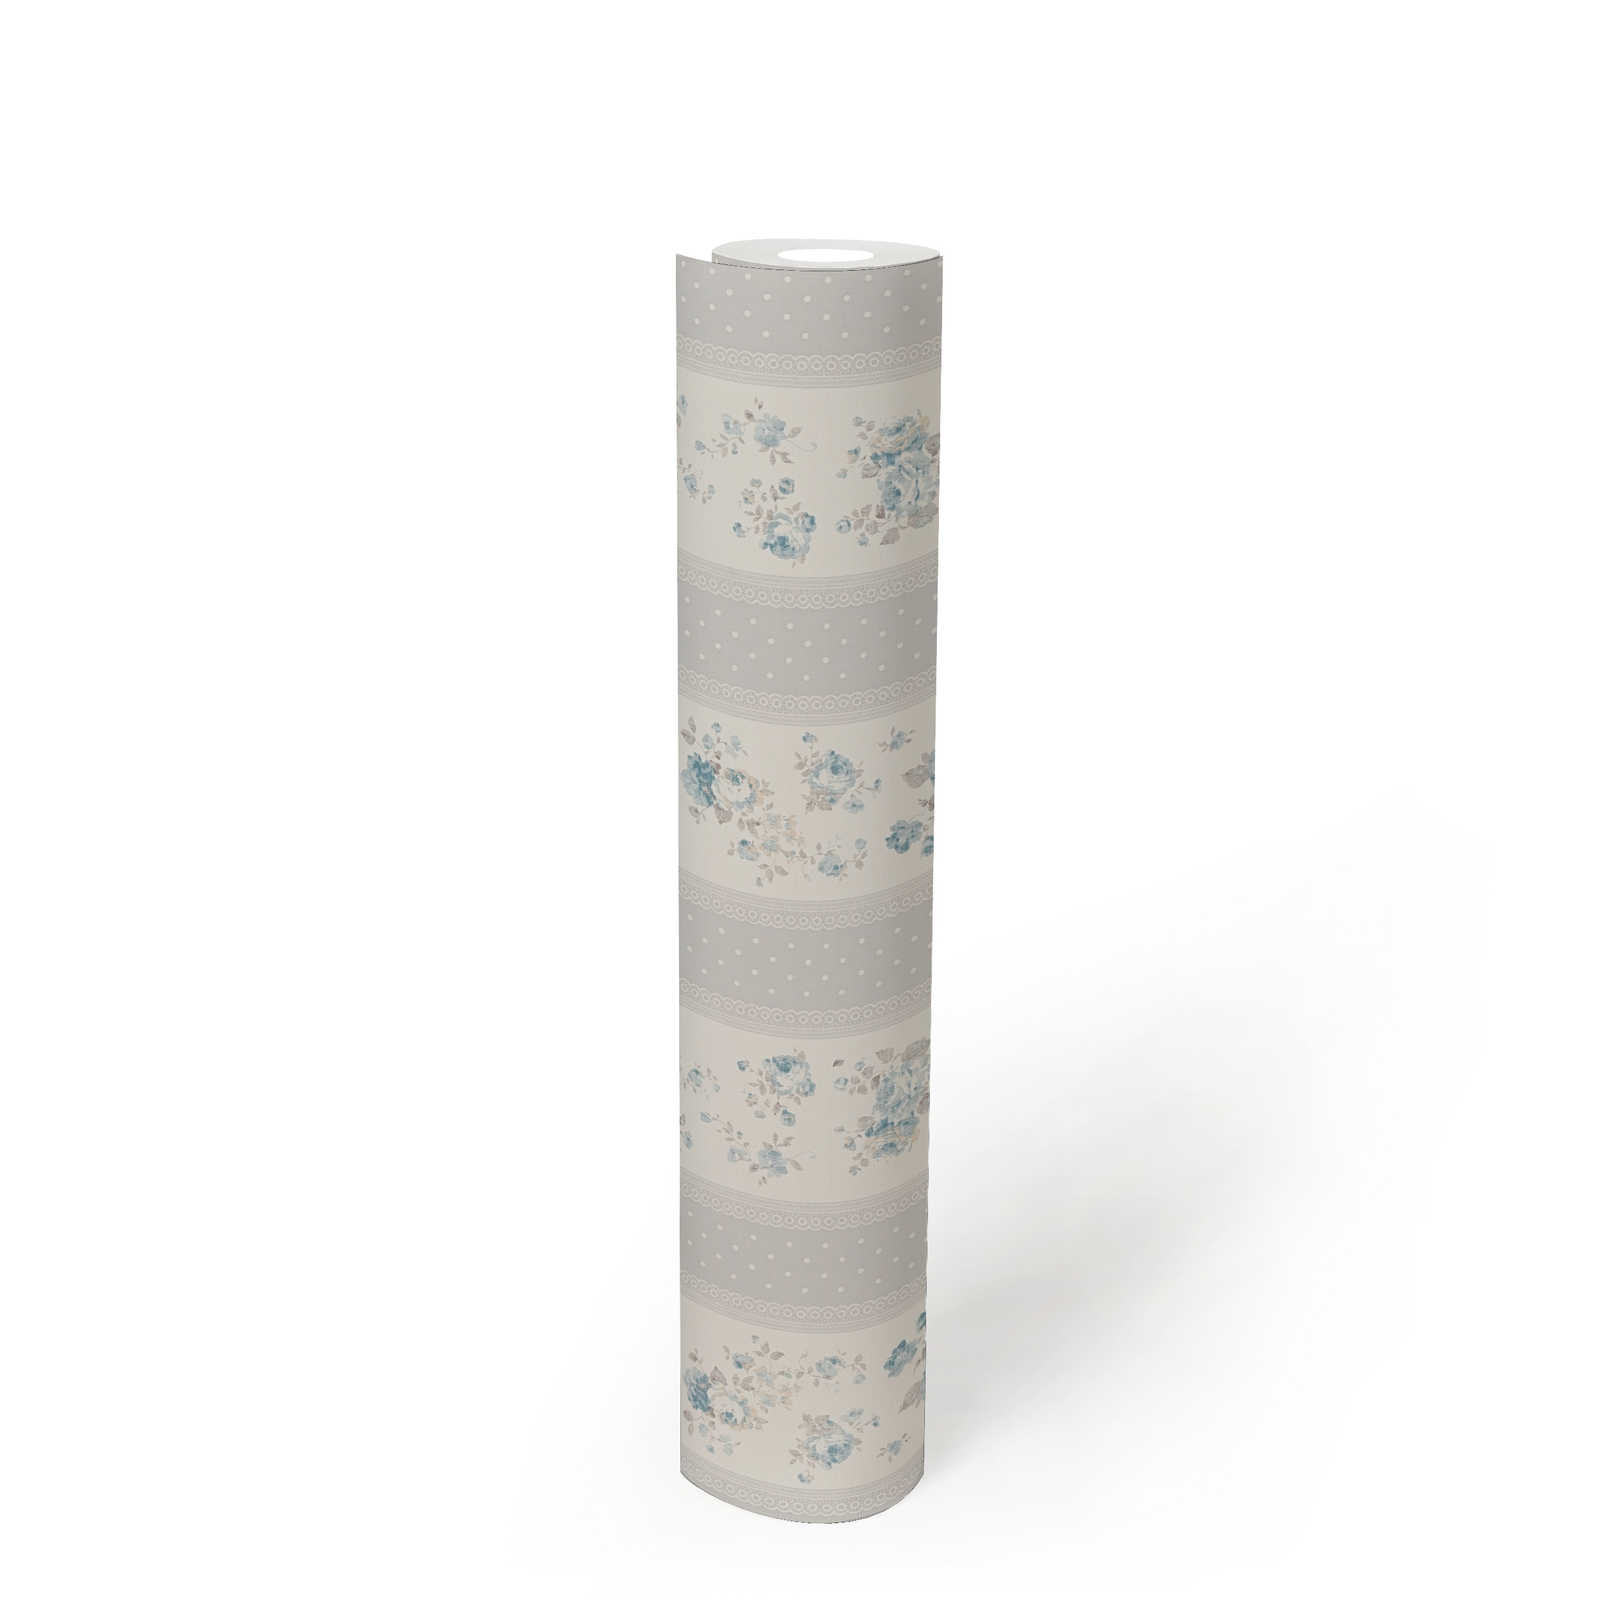             Vliestapete mit gepunkteten und floralen Streifen – Grau, Weiß, Blau
        